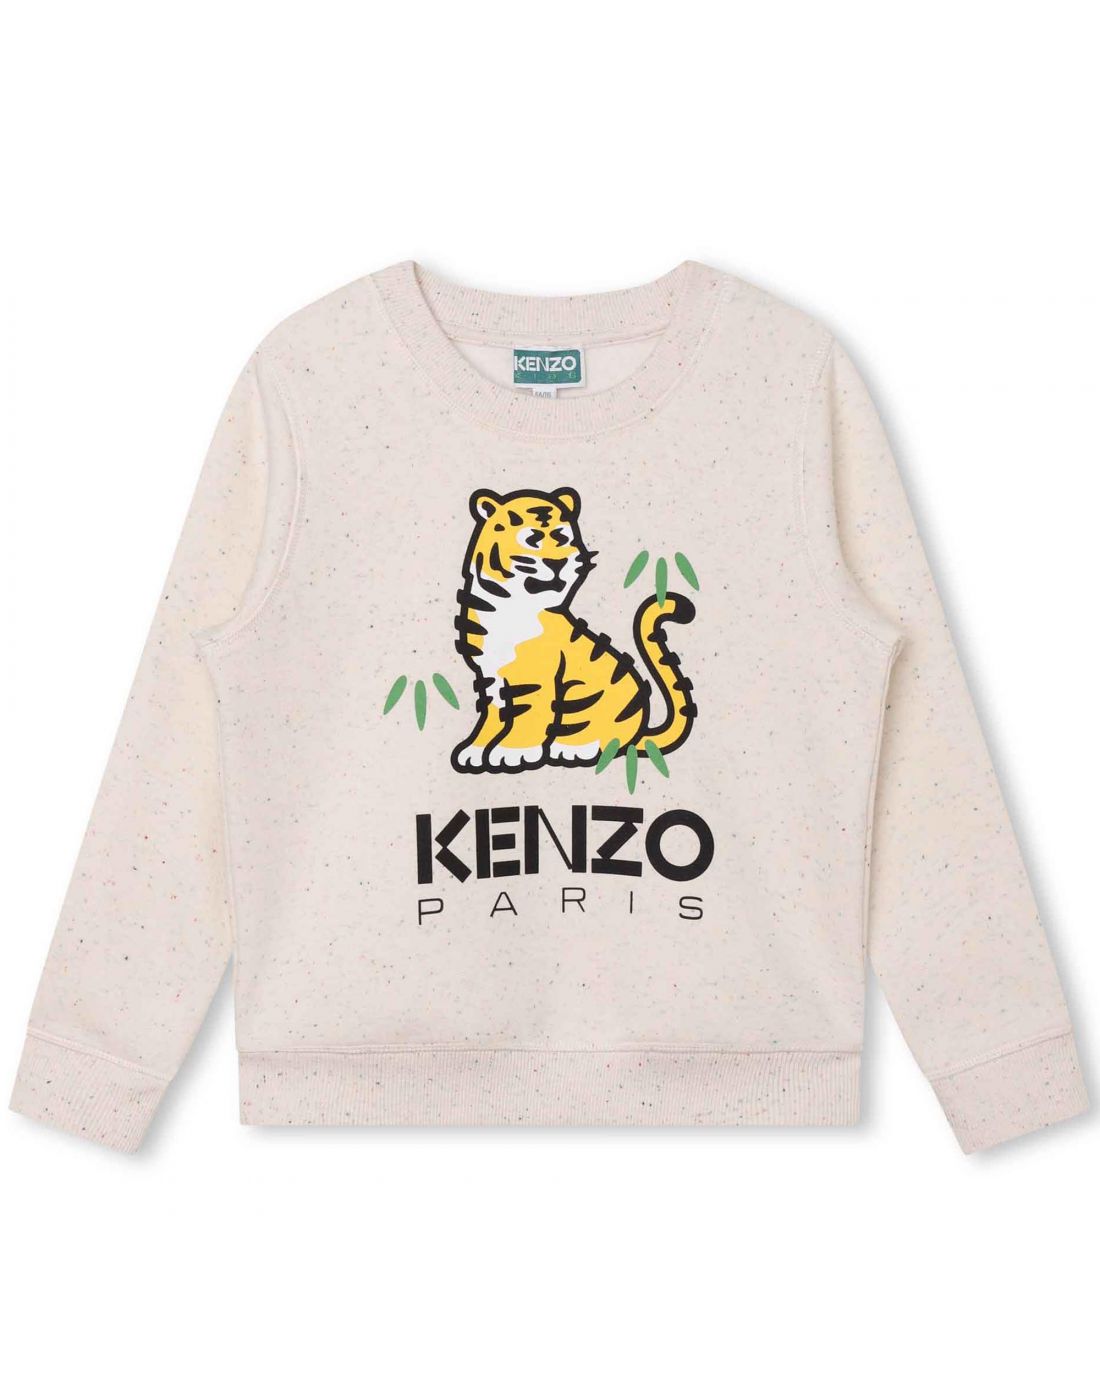 Παιδική Μπλούζα ΜΜ Kenzo, Kenzo, 23262399 | LapinKids.com | LAPIN KIDS